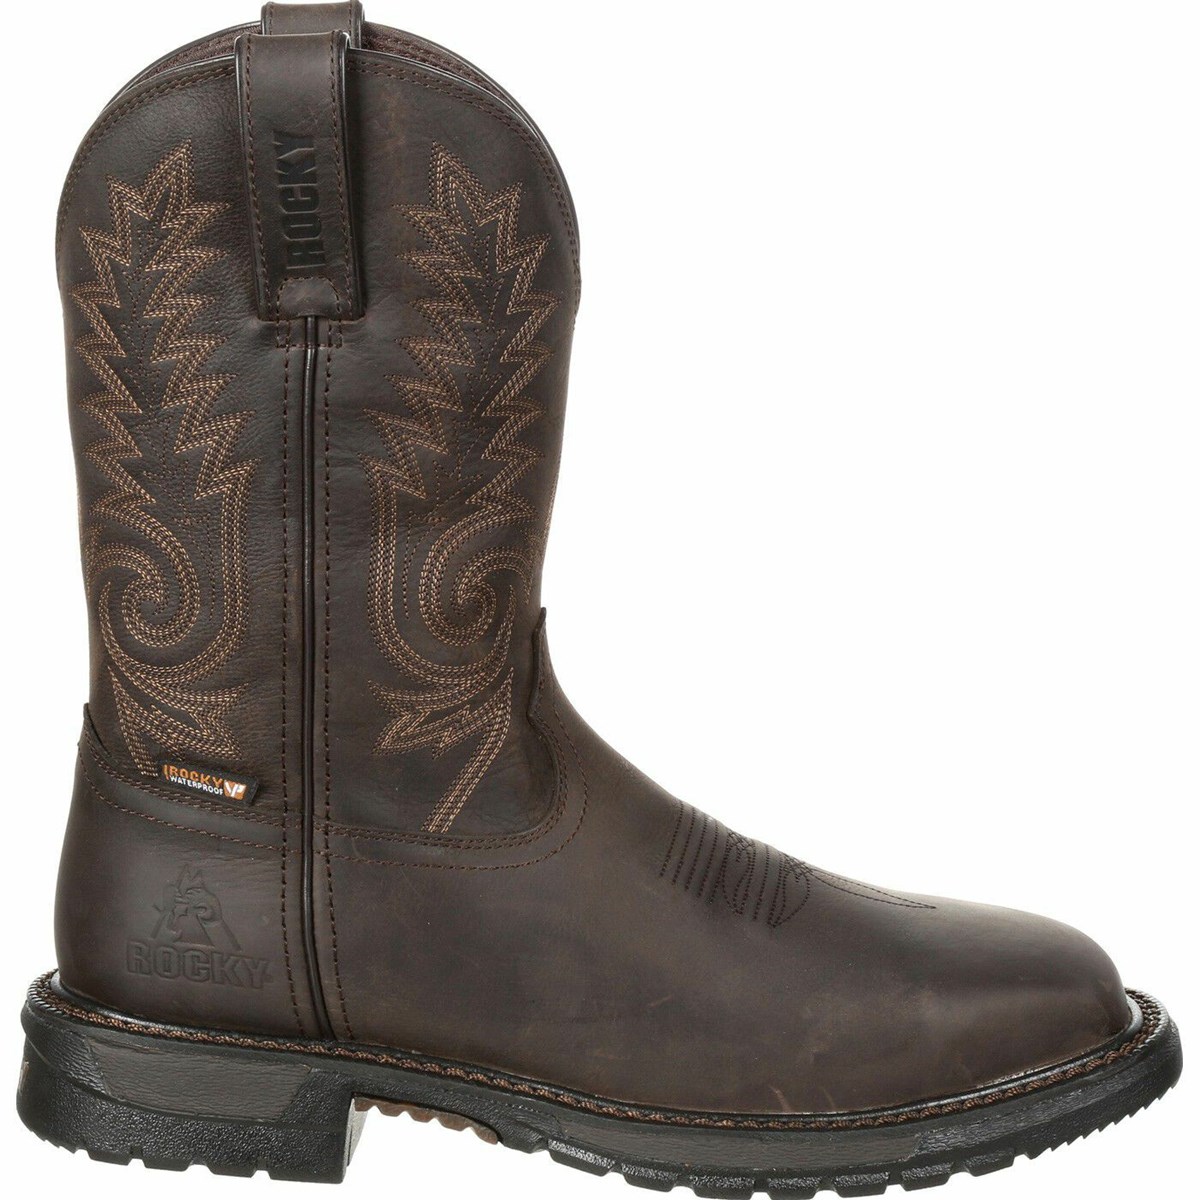 Rocky Western Boots Cheap Online - Dark Brown Mens Original Ride FLX ...